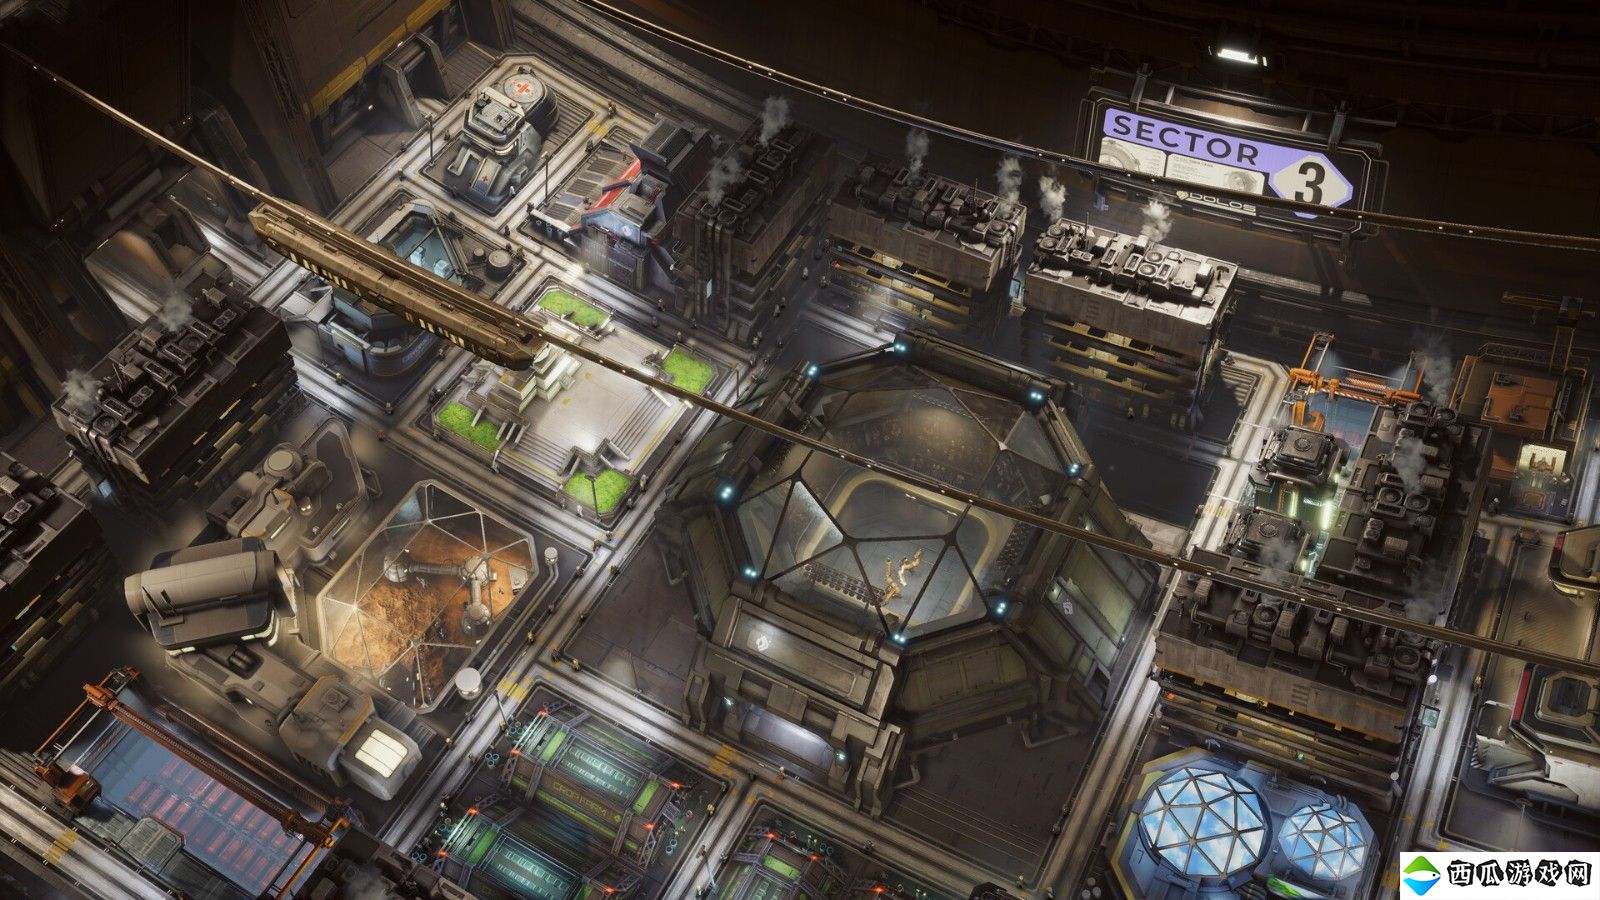 太空城市建造游戏《伊克西翁》将登陆PS5和Xbox Series